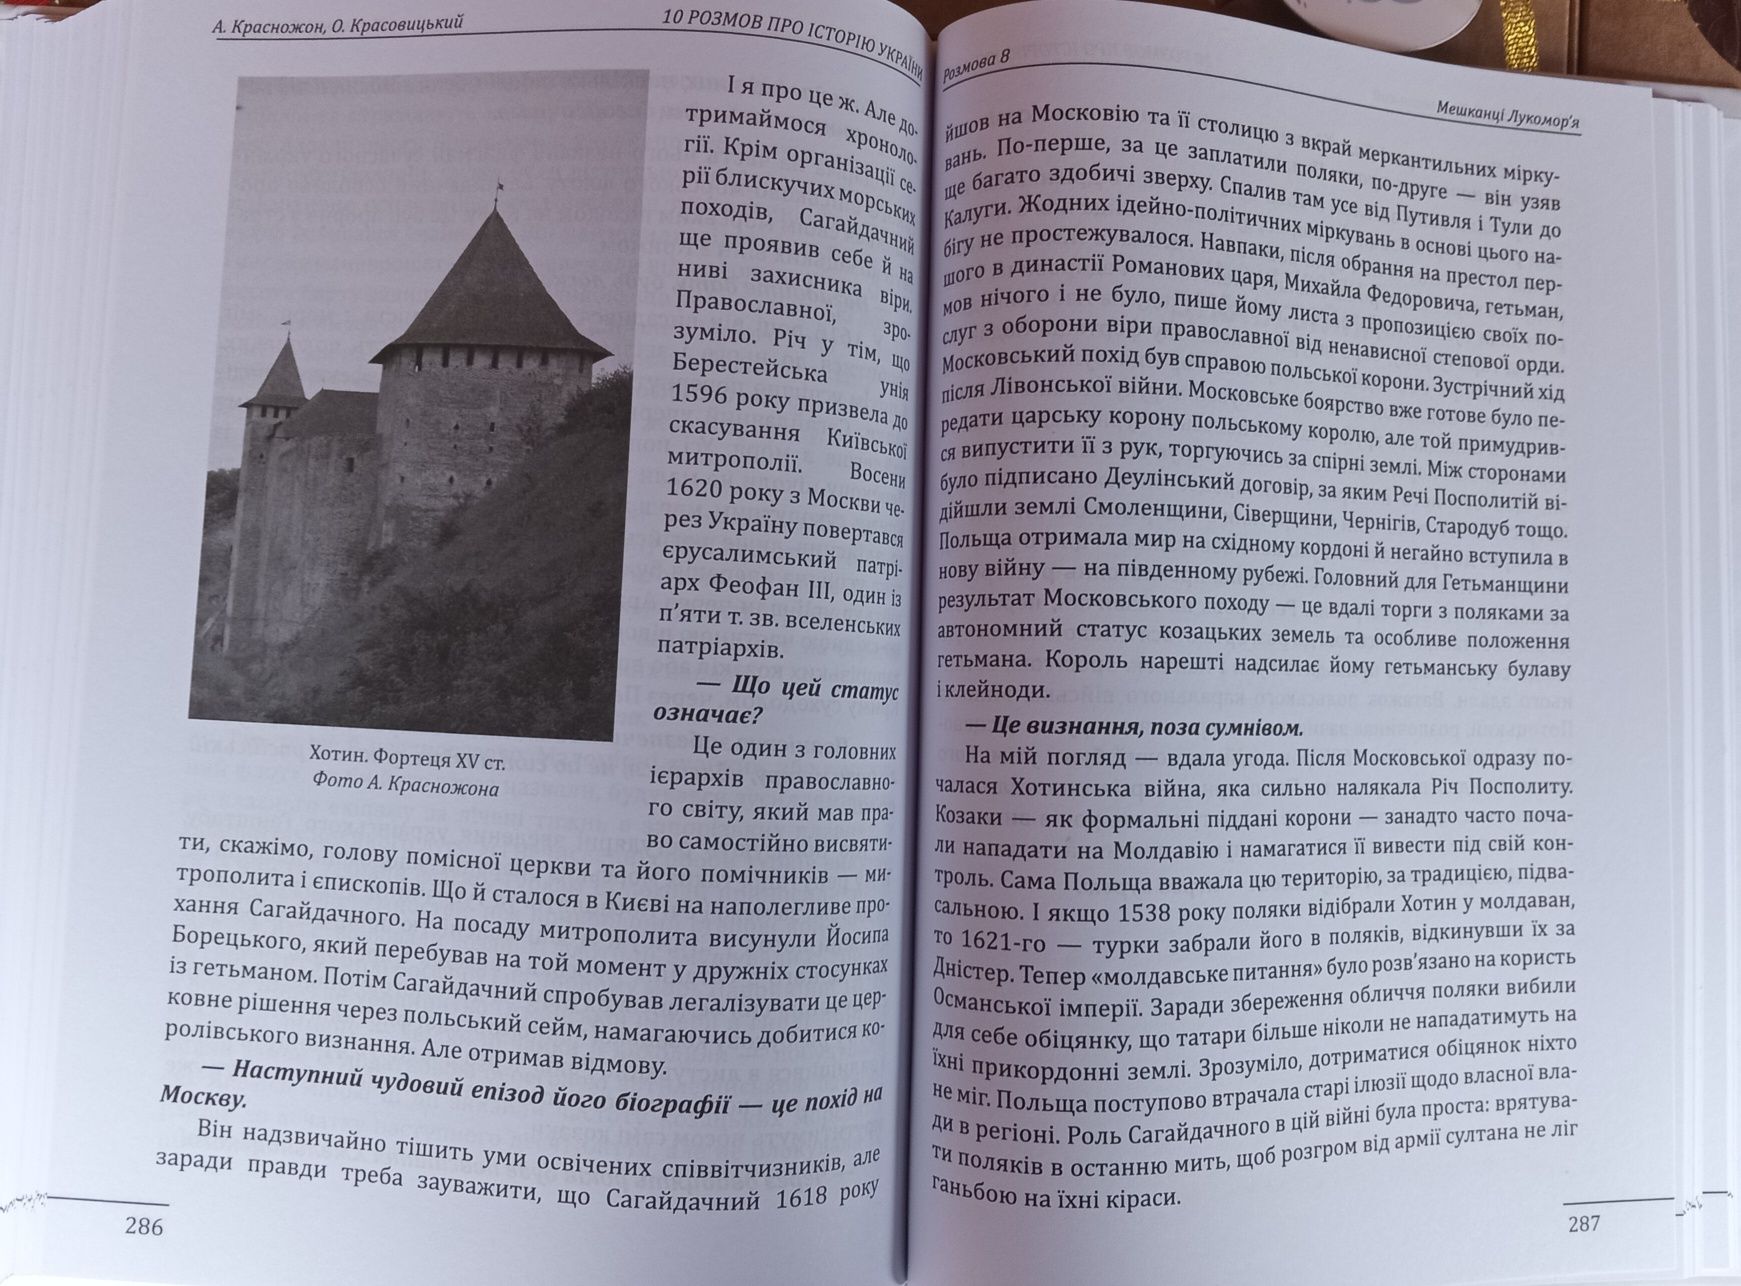 10 розмов про середньовічну історію України. Тираж: 1000 примірників